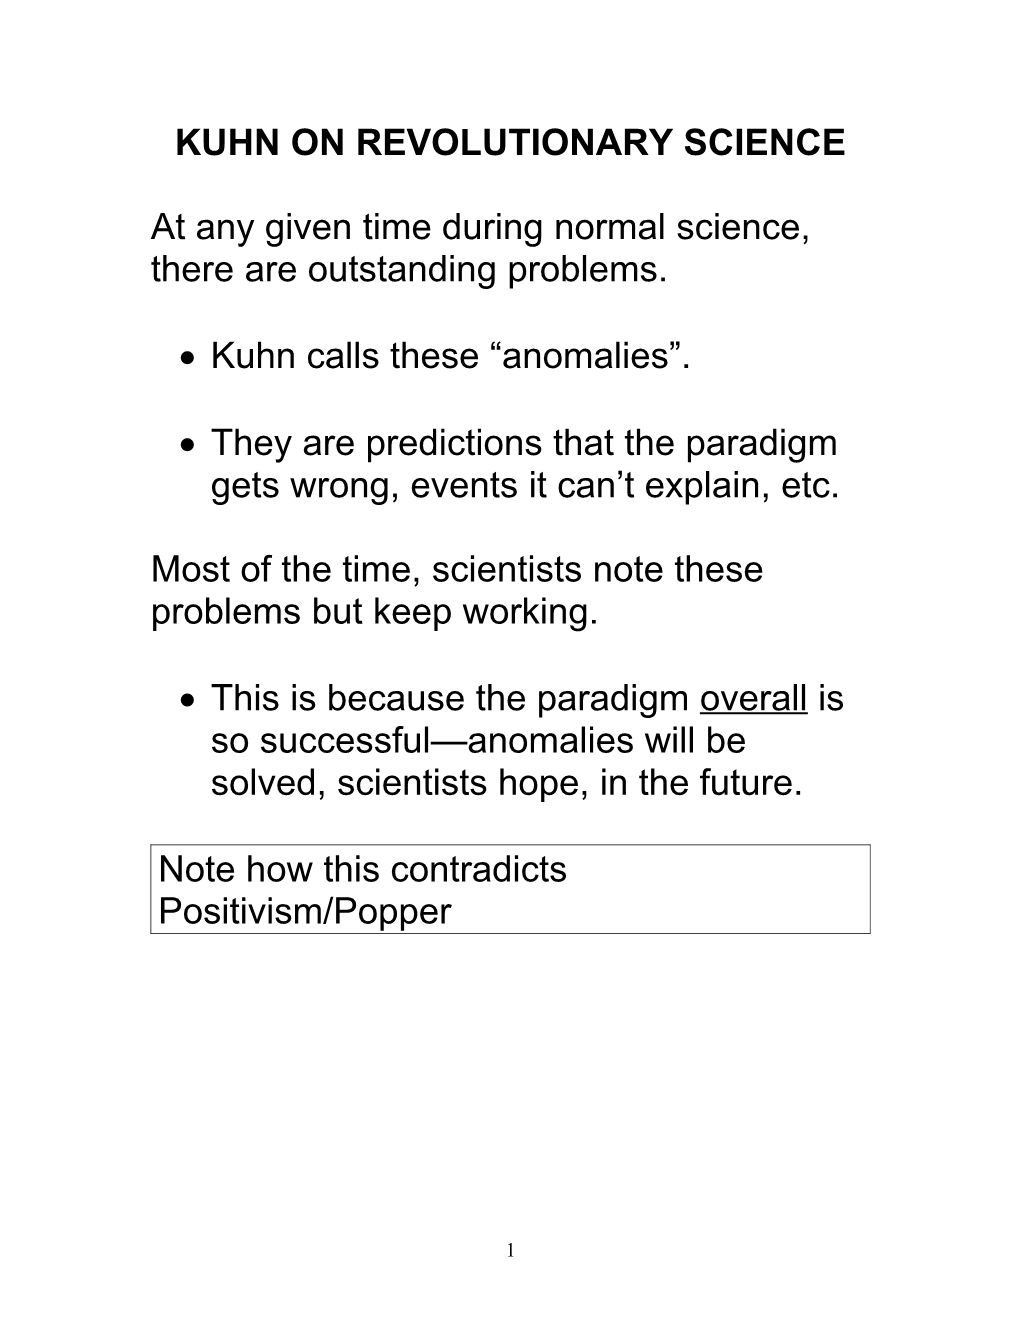 Kuhn on Revolutionary Science